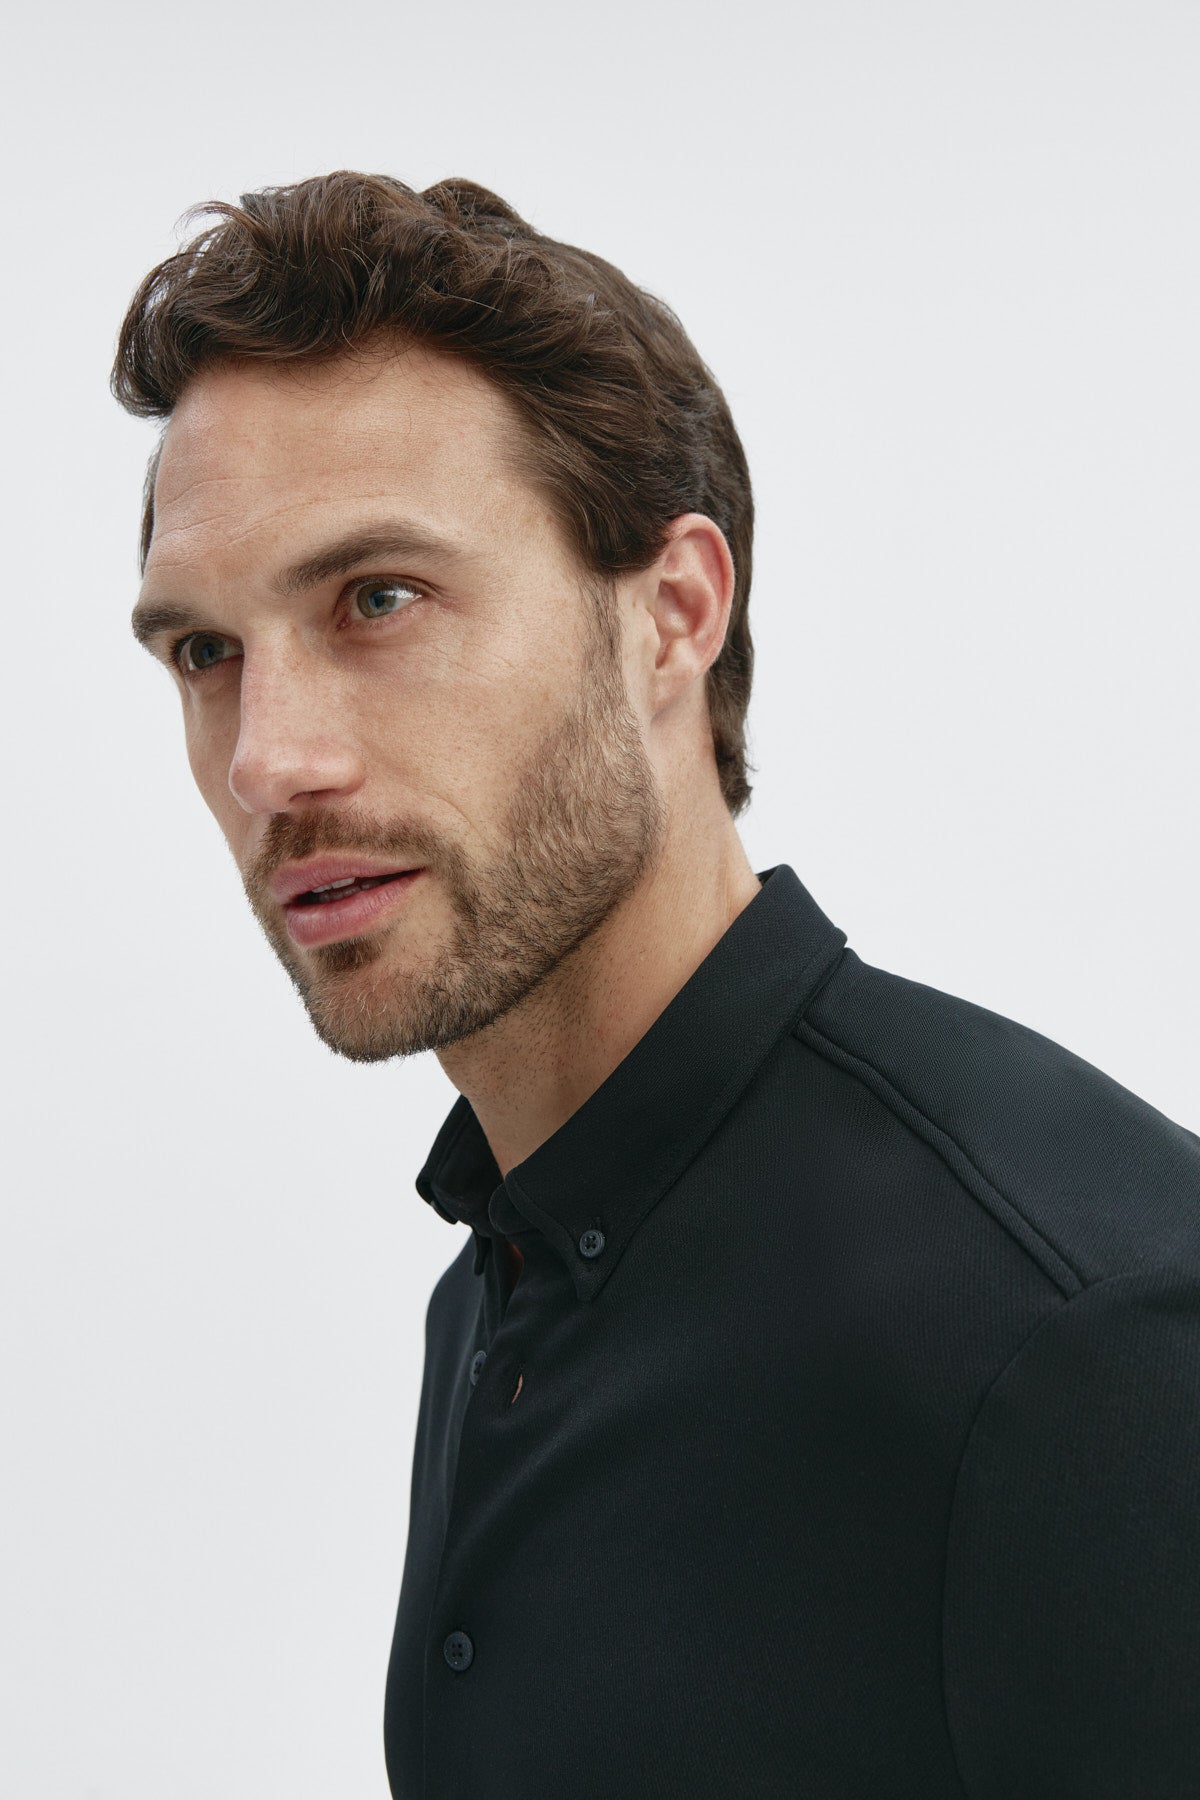 Camisa casual negra para hombre sin arrugas ni manchas. Manga larga, antiarrugas y antimanchas. Foto retrato